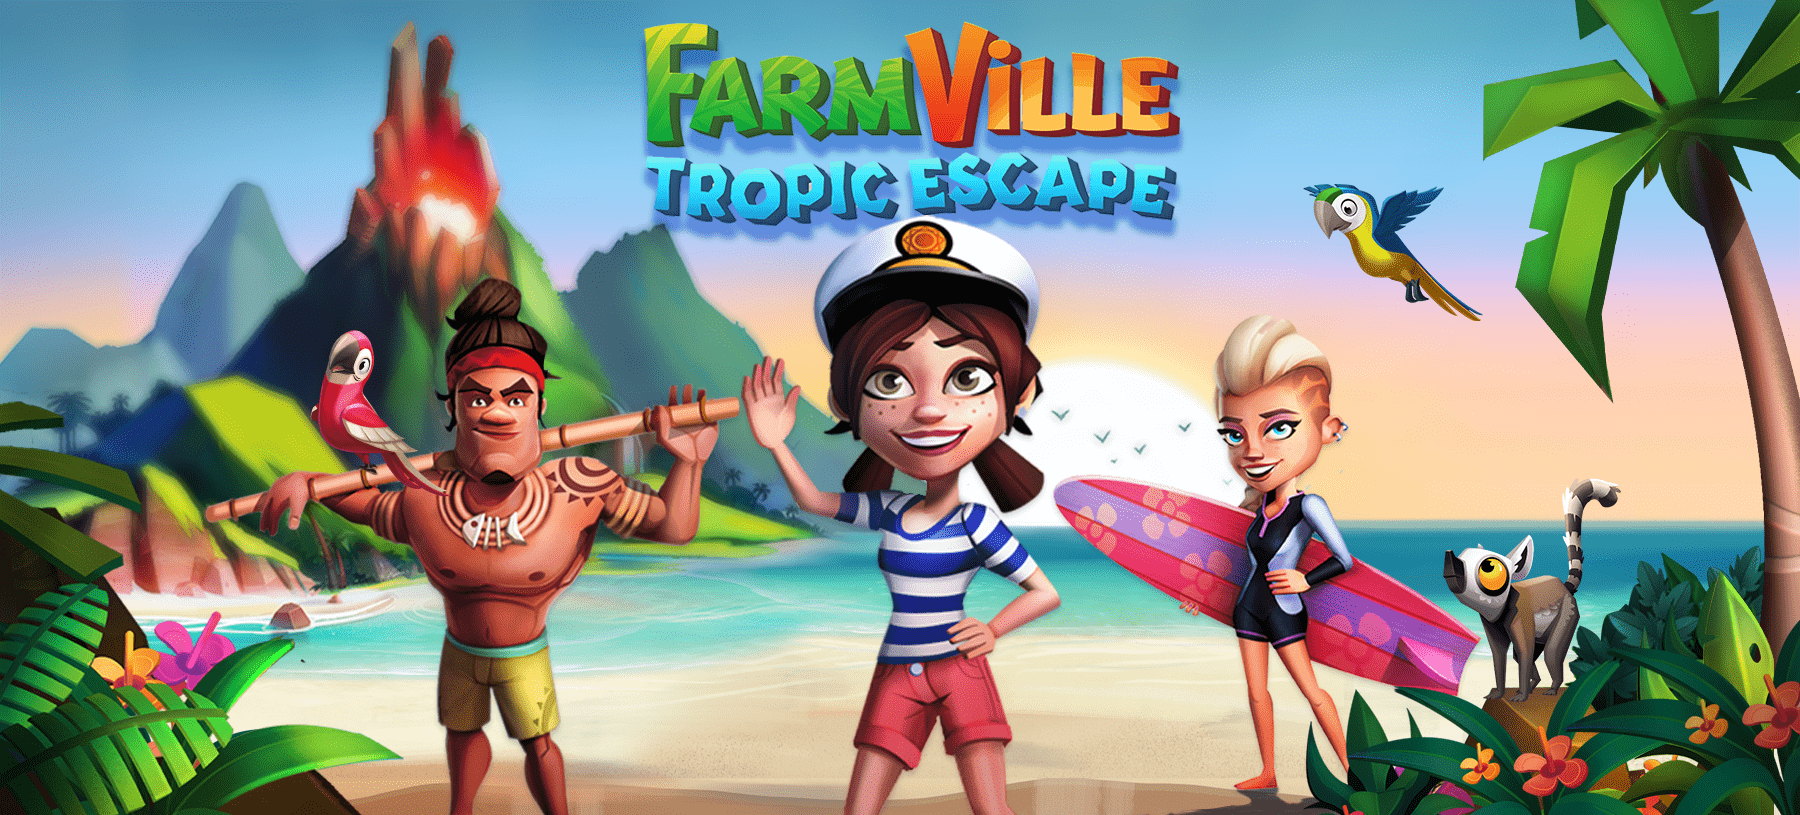 Farmville: Tropic Escape Hero Image